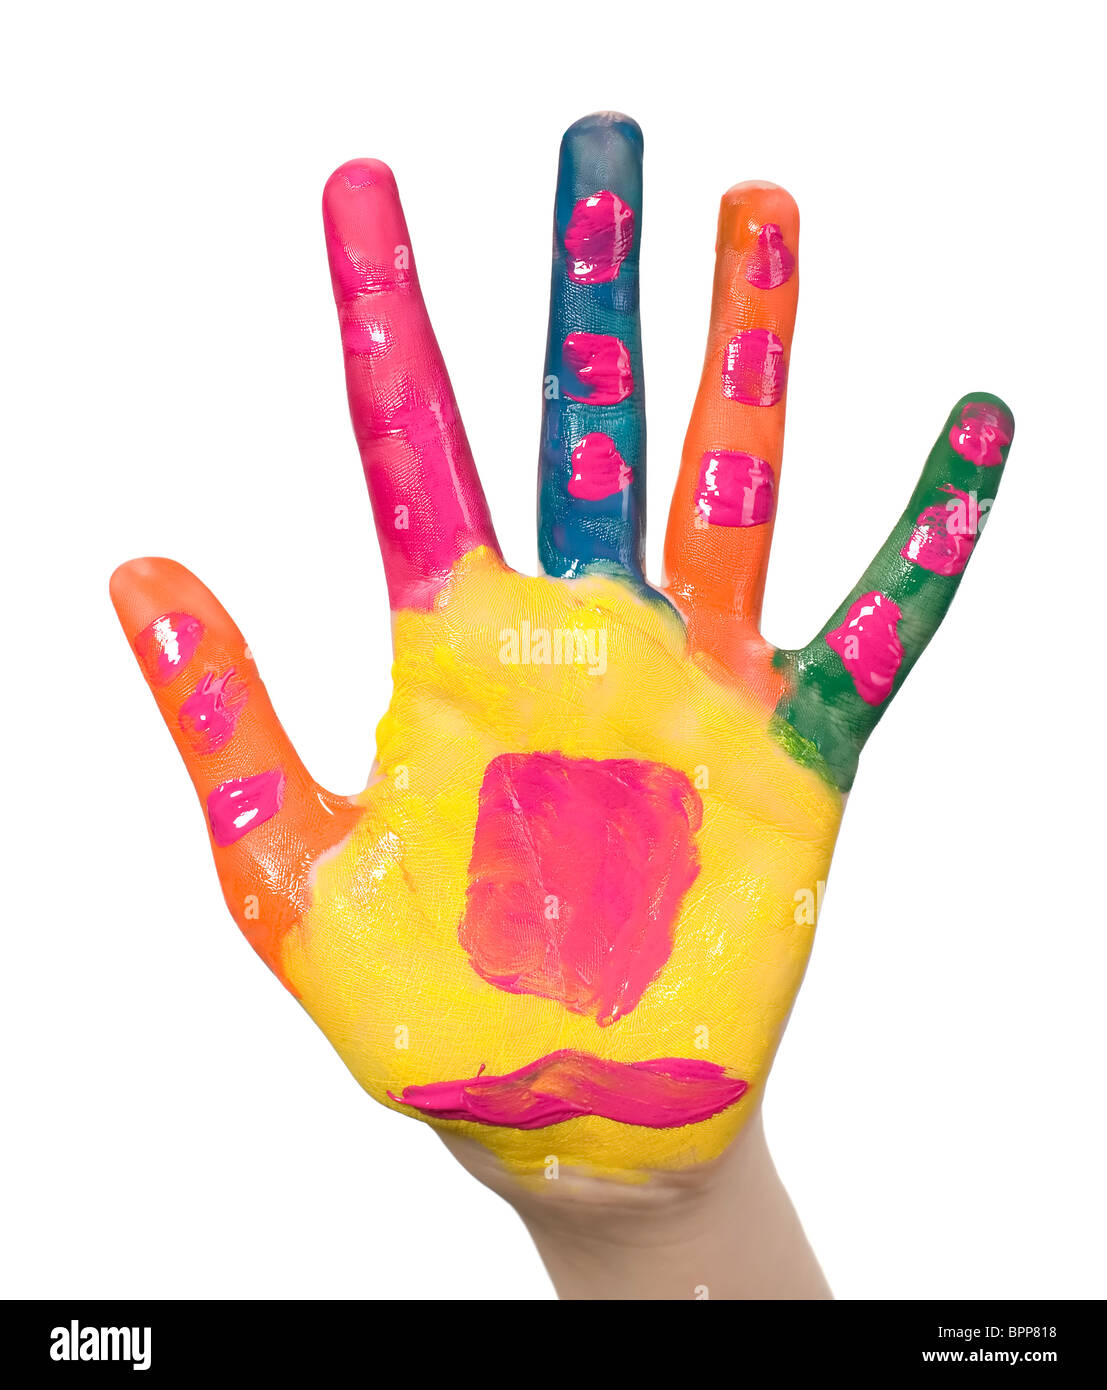 Kinderhand ist mit verschiedenen Farben bemalt. Stockfoto